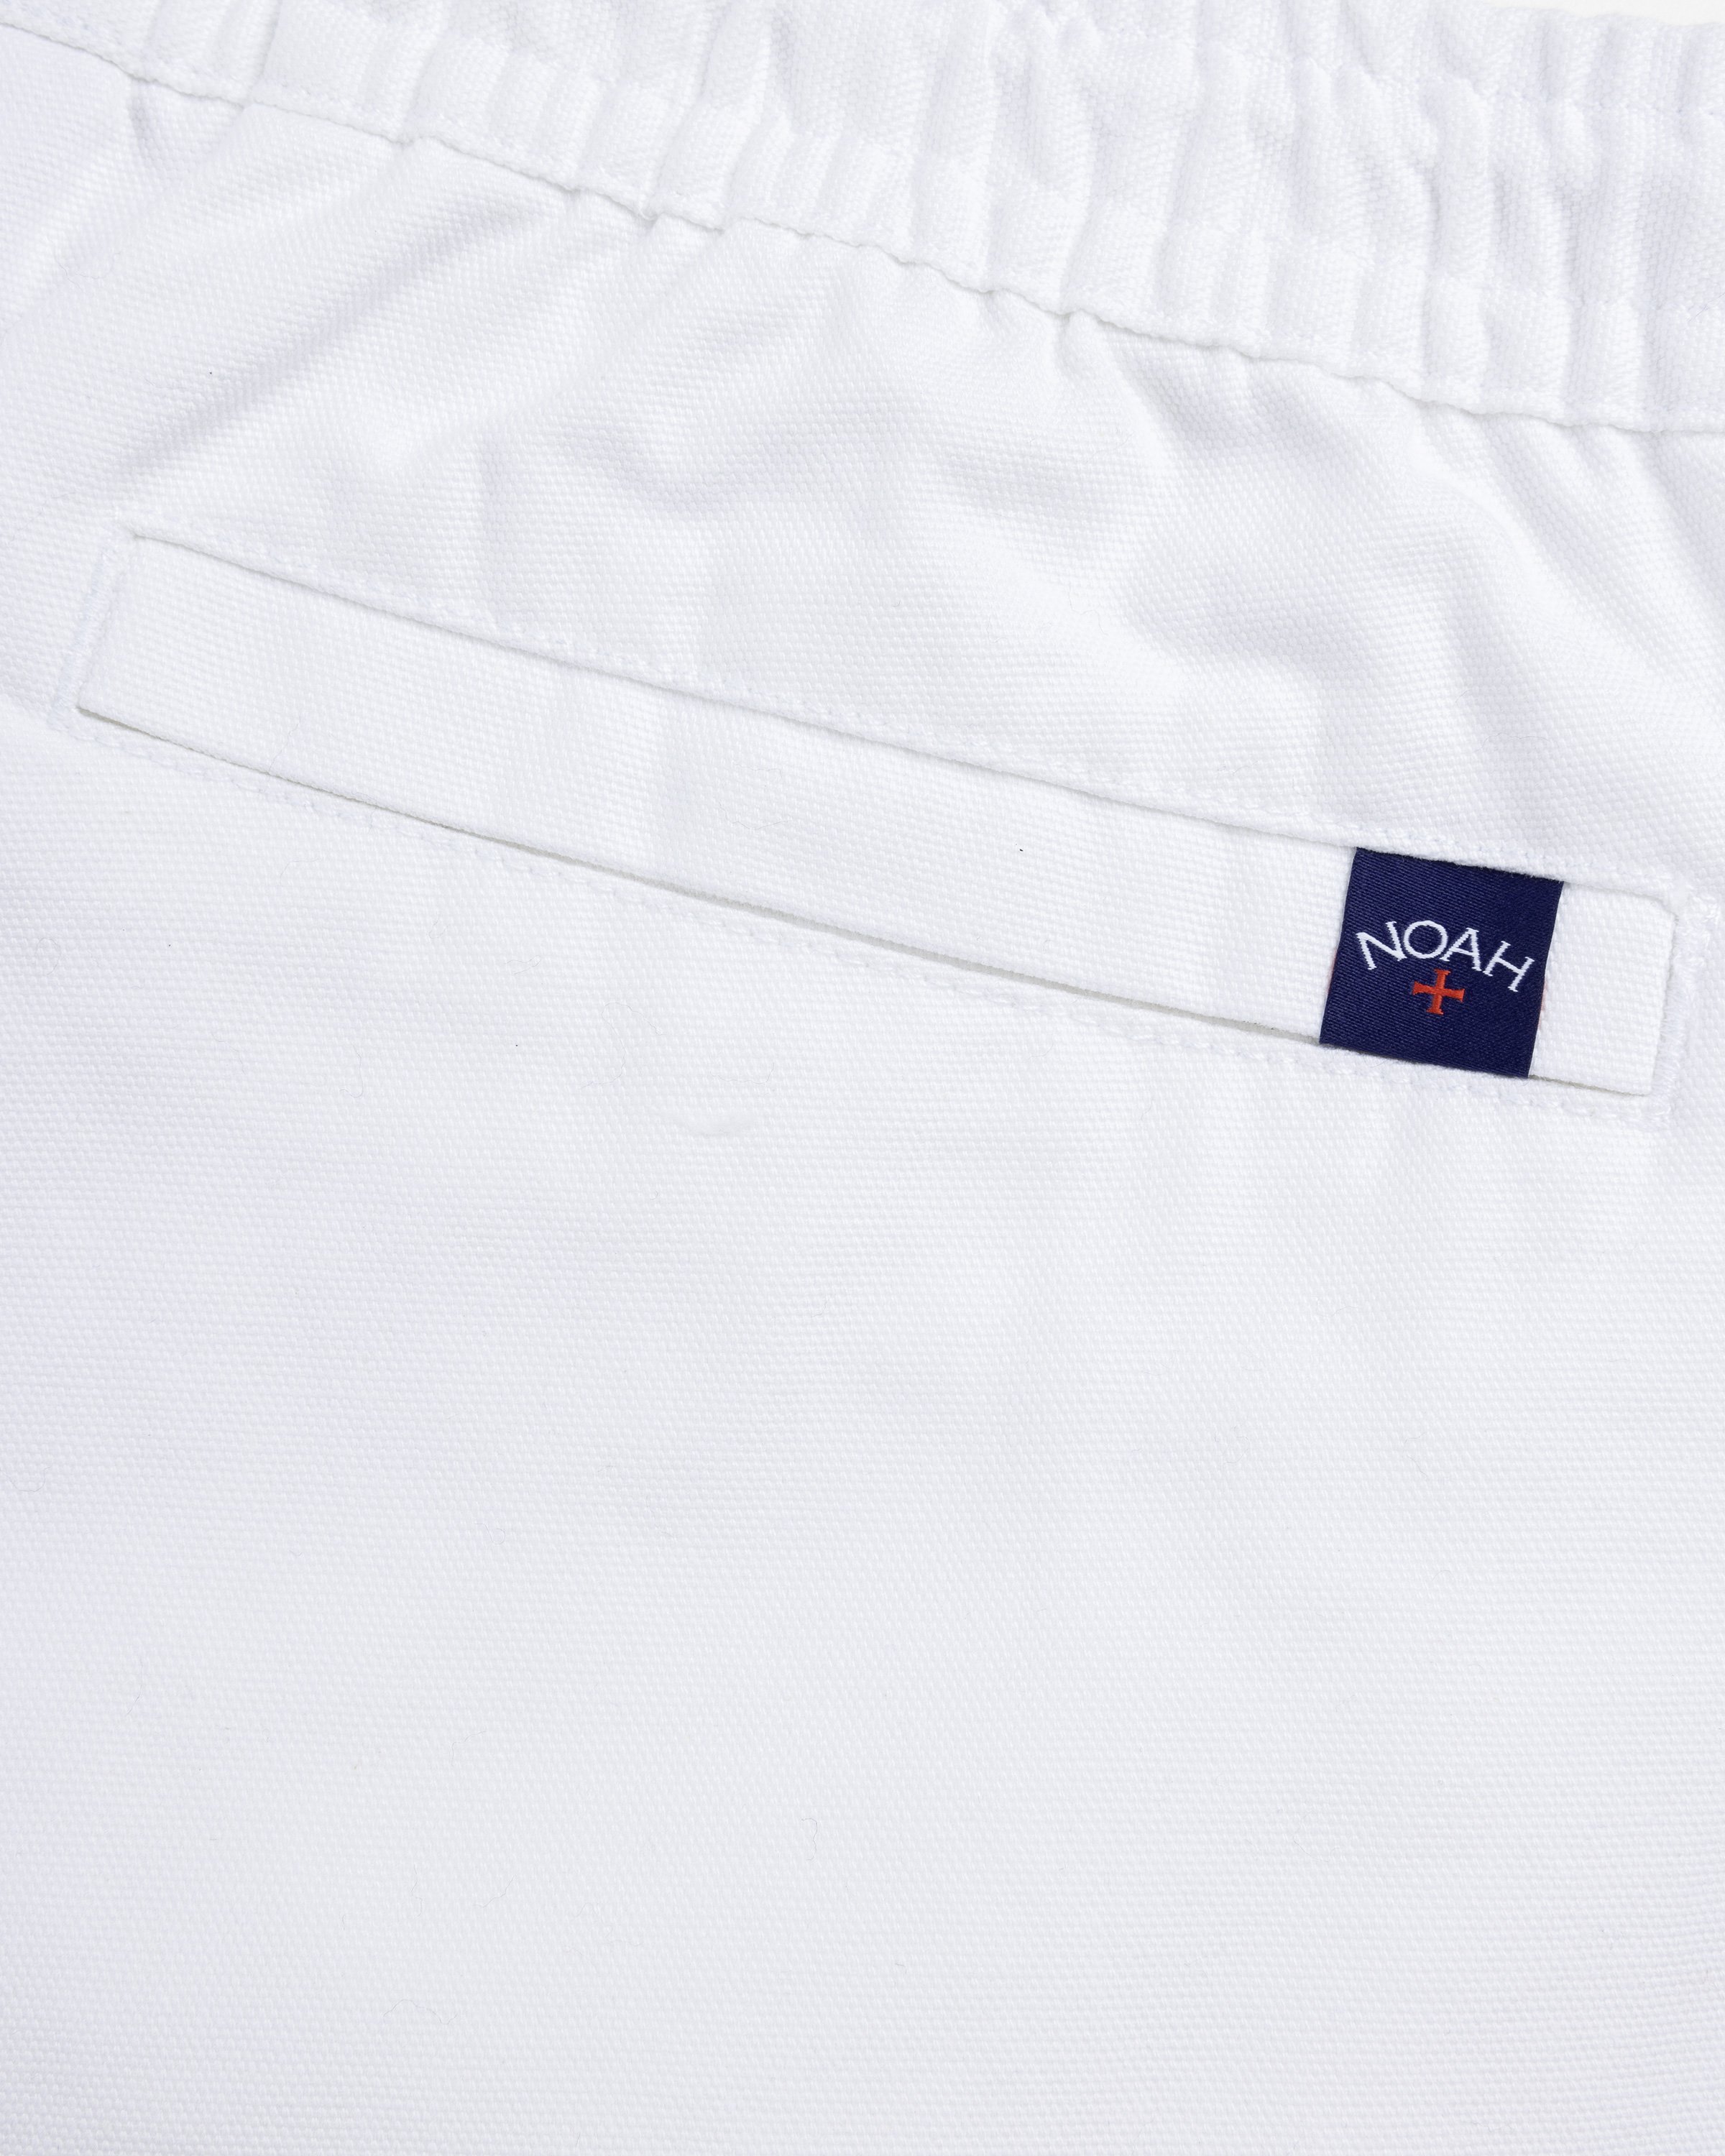 Puma - NOAH Shorts - Clothing - White - Image 6